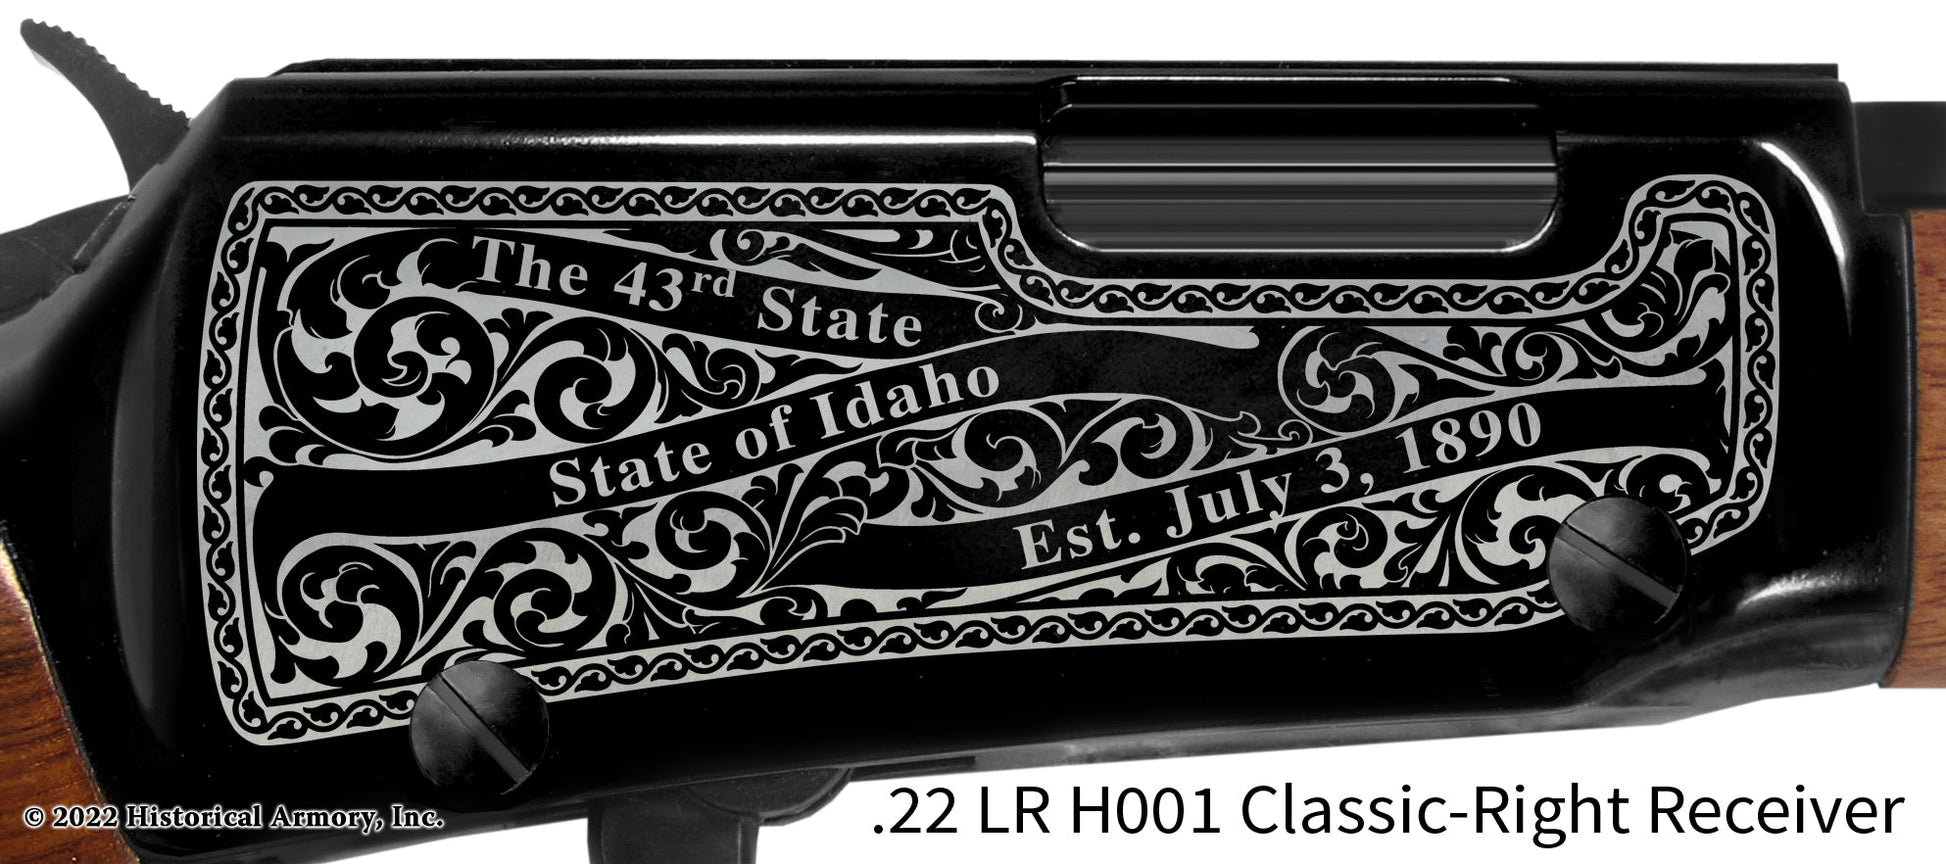 Kootenai County Idaho Engraved Henry H001 Rifle